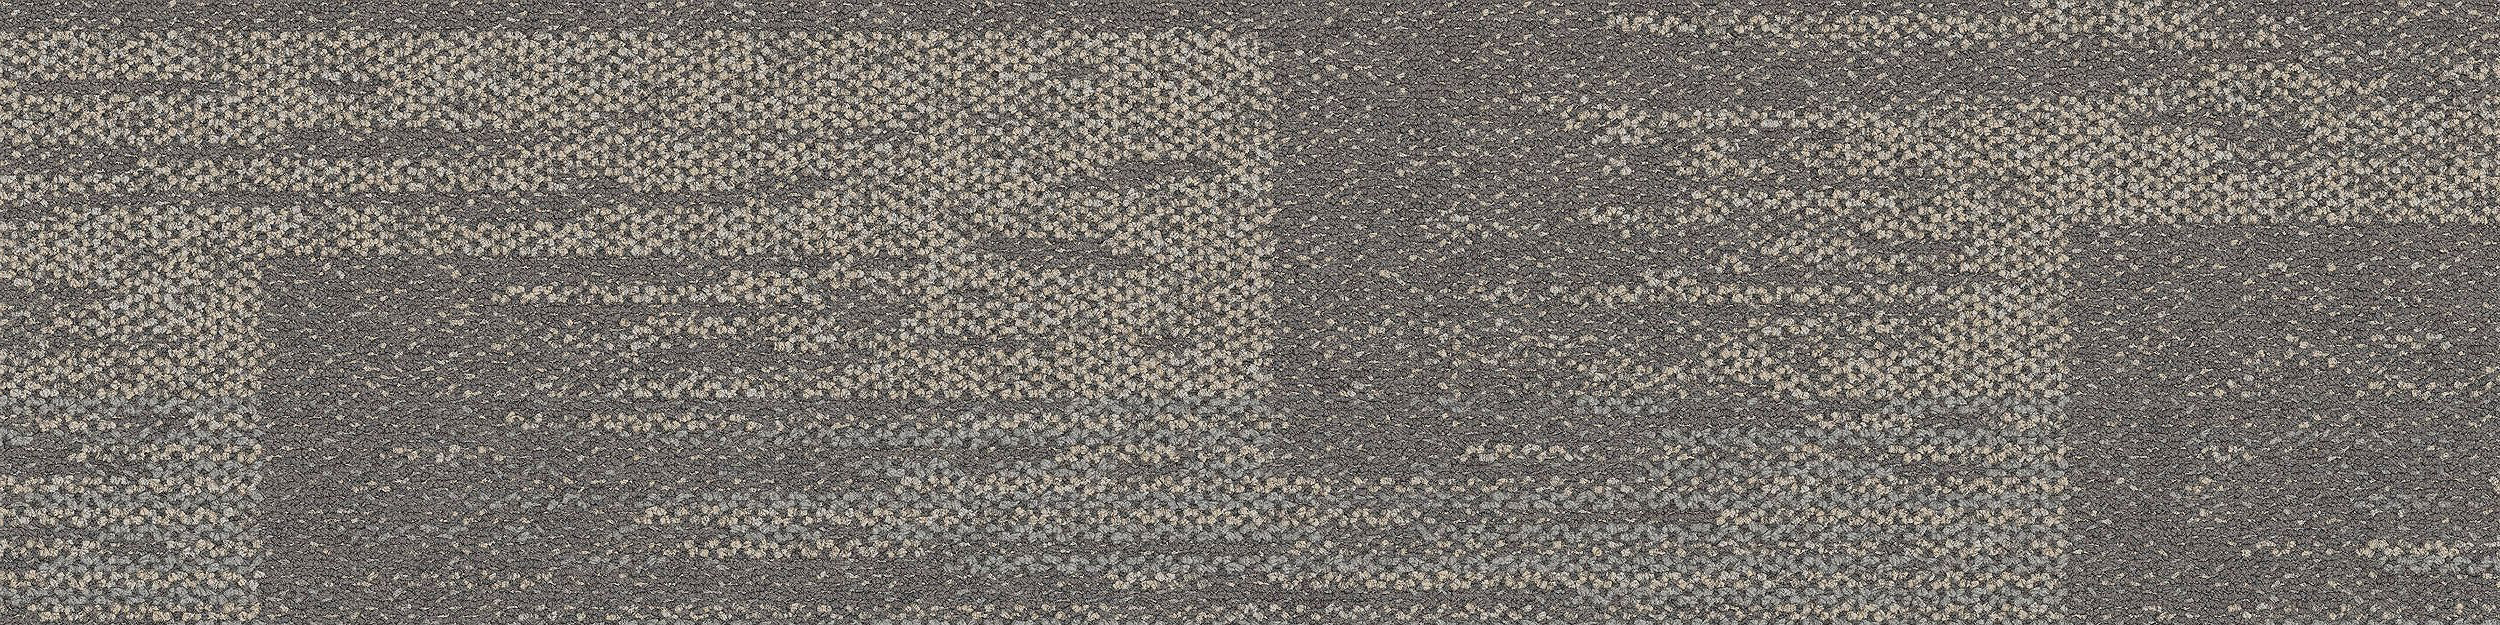 AE311 Carpet Tile In Greige image number 14